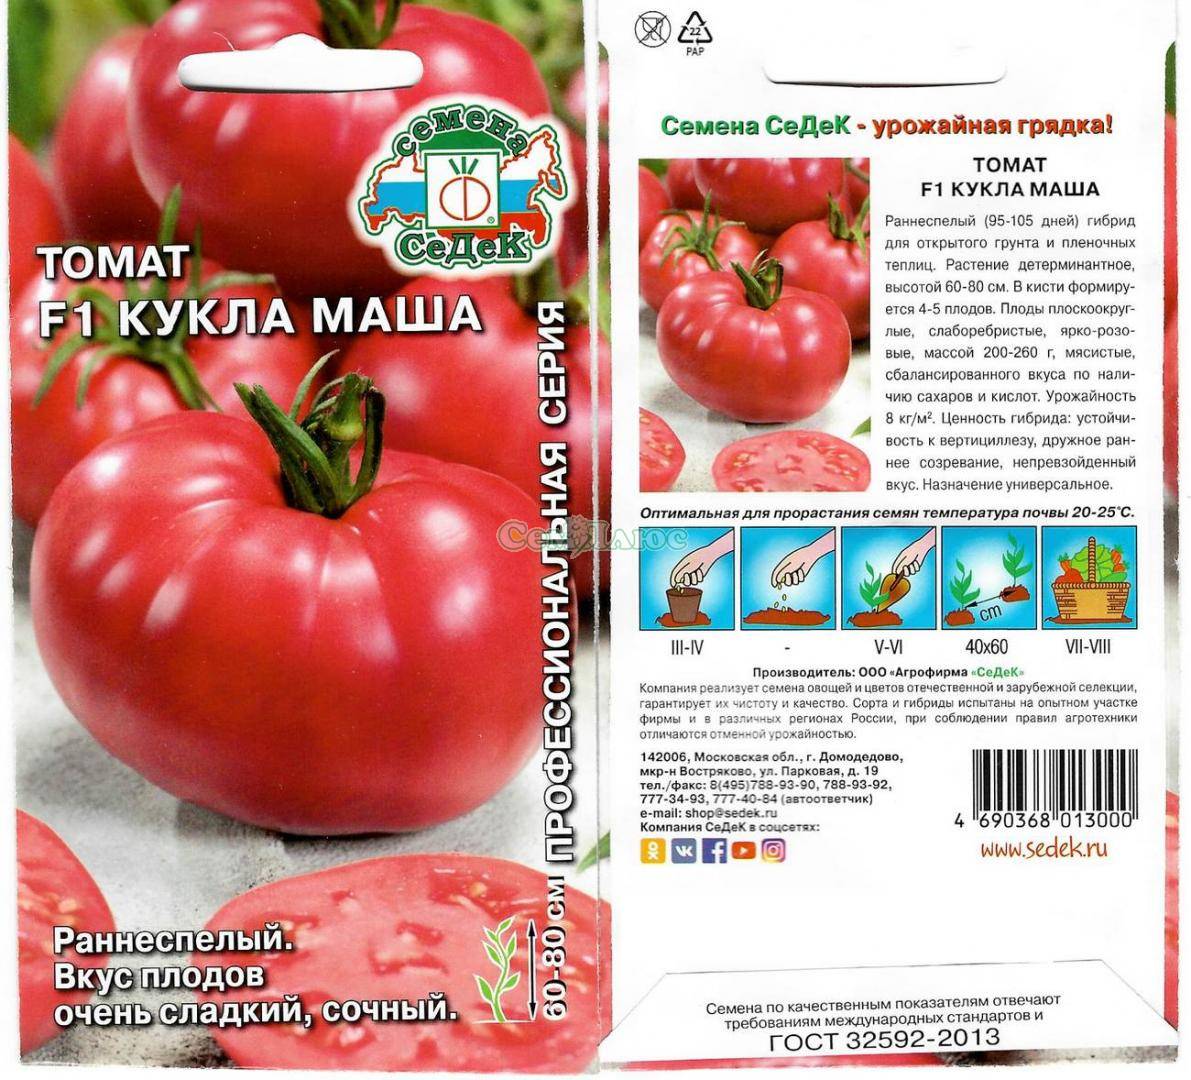 Jписание, характеристика, посев на рассаду, подкормка, урожайность, фото, видео и самые распространенные болезни томатов cорта «кукла маша f1».